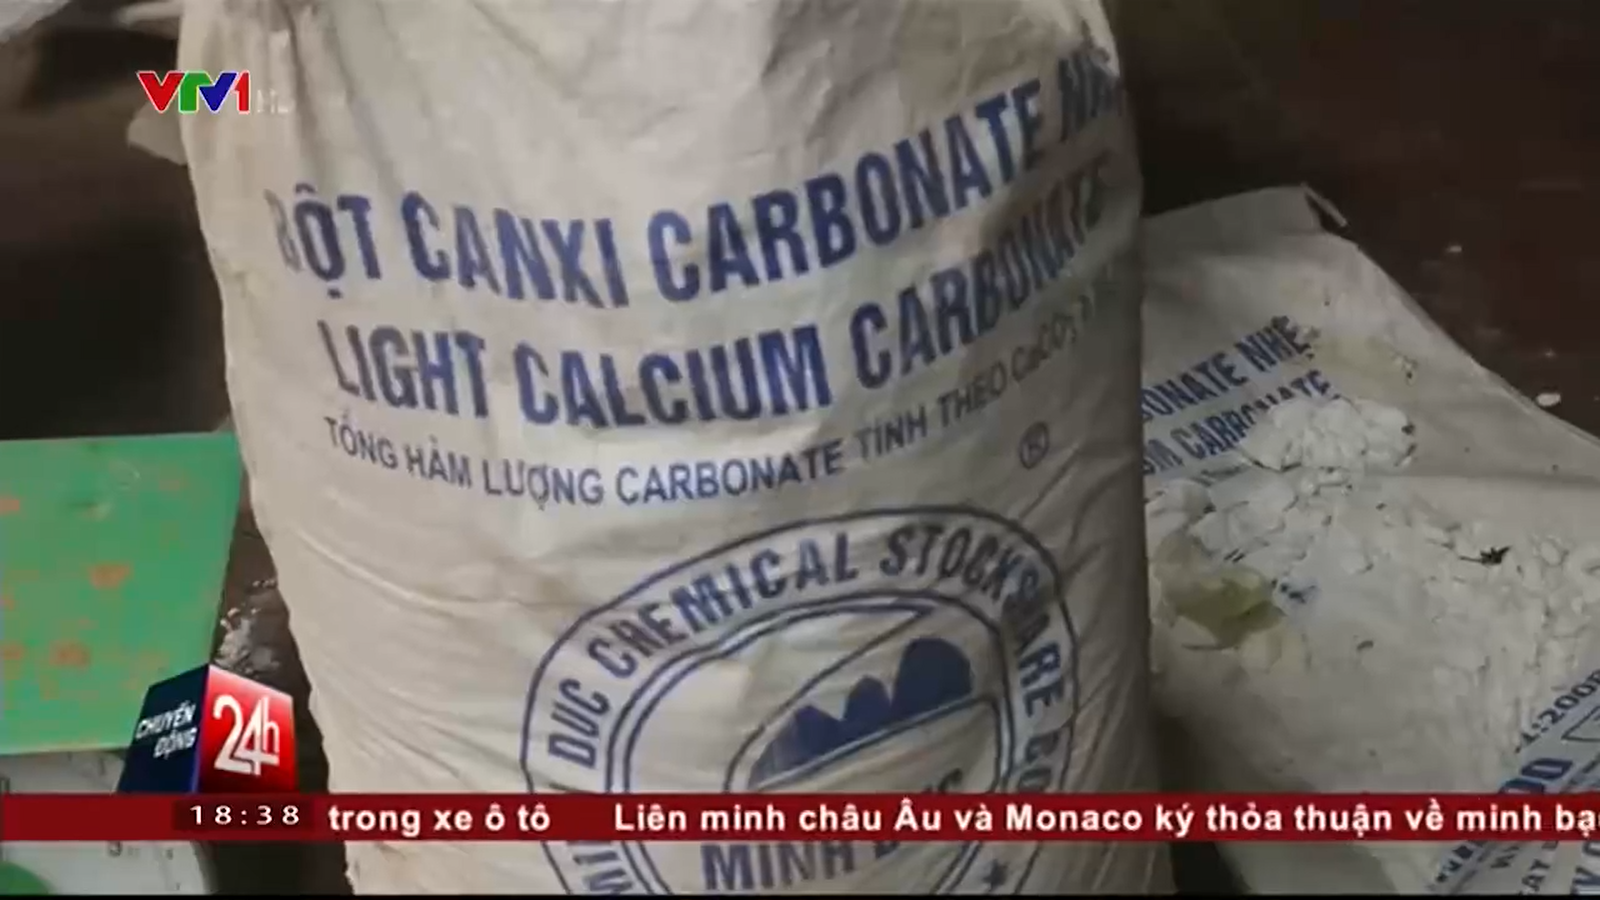 Bột Canxi cacbonat được sử dụng sản xuất nhang